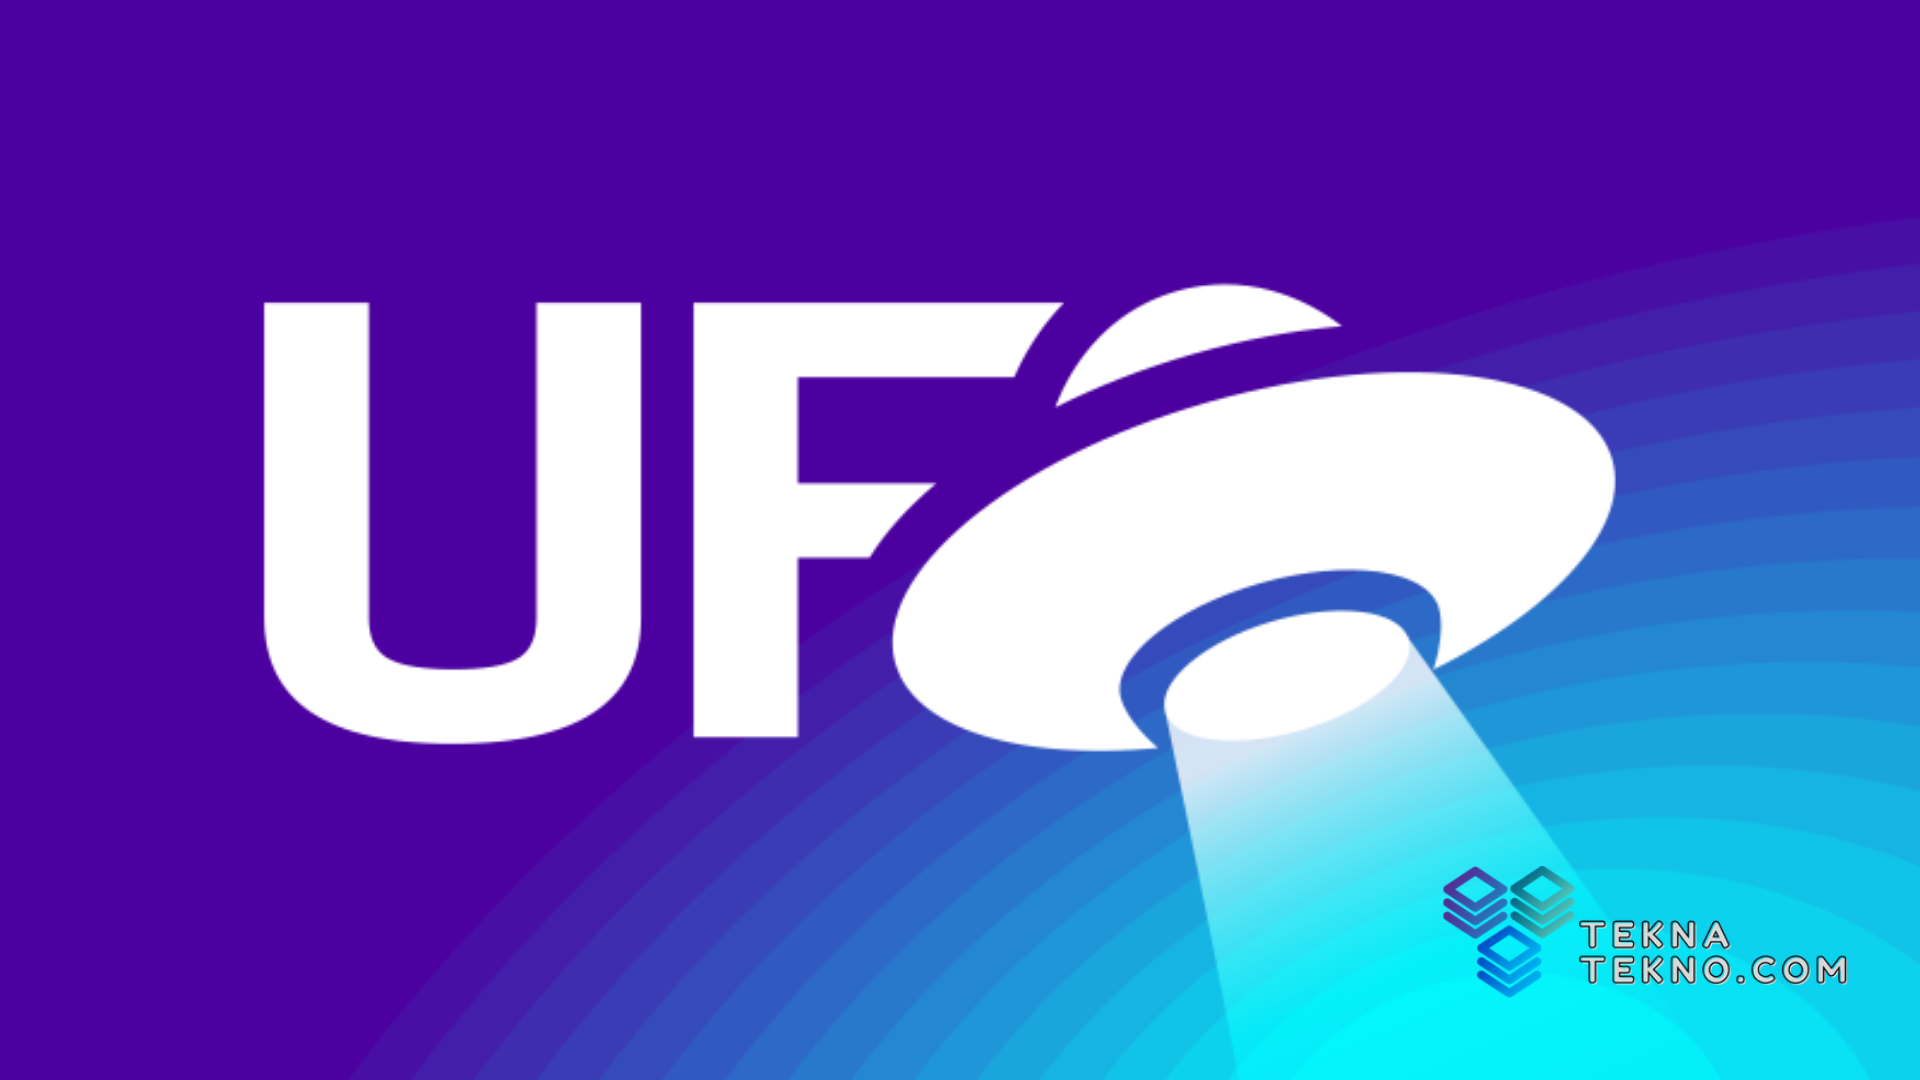 Prediksi Harga UFO Gaming Token yang Naik di 2022